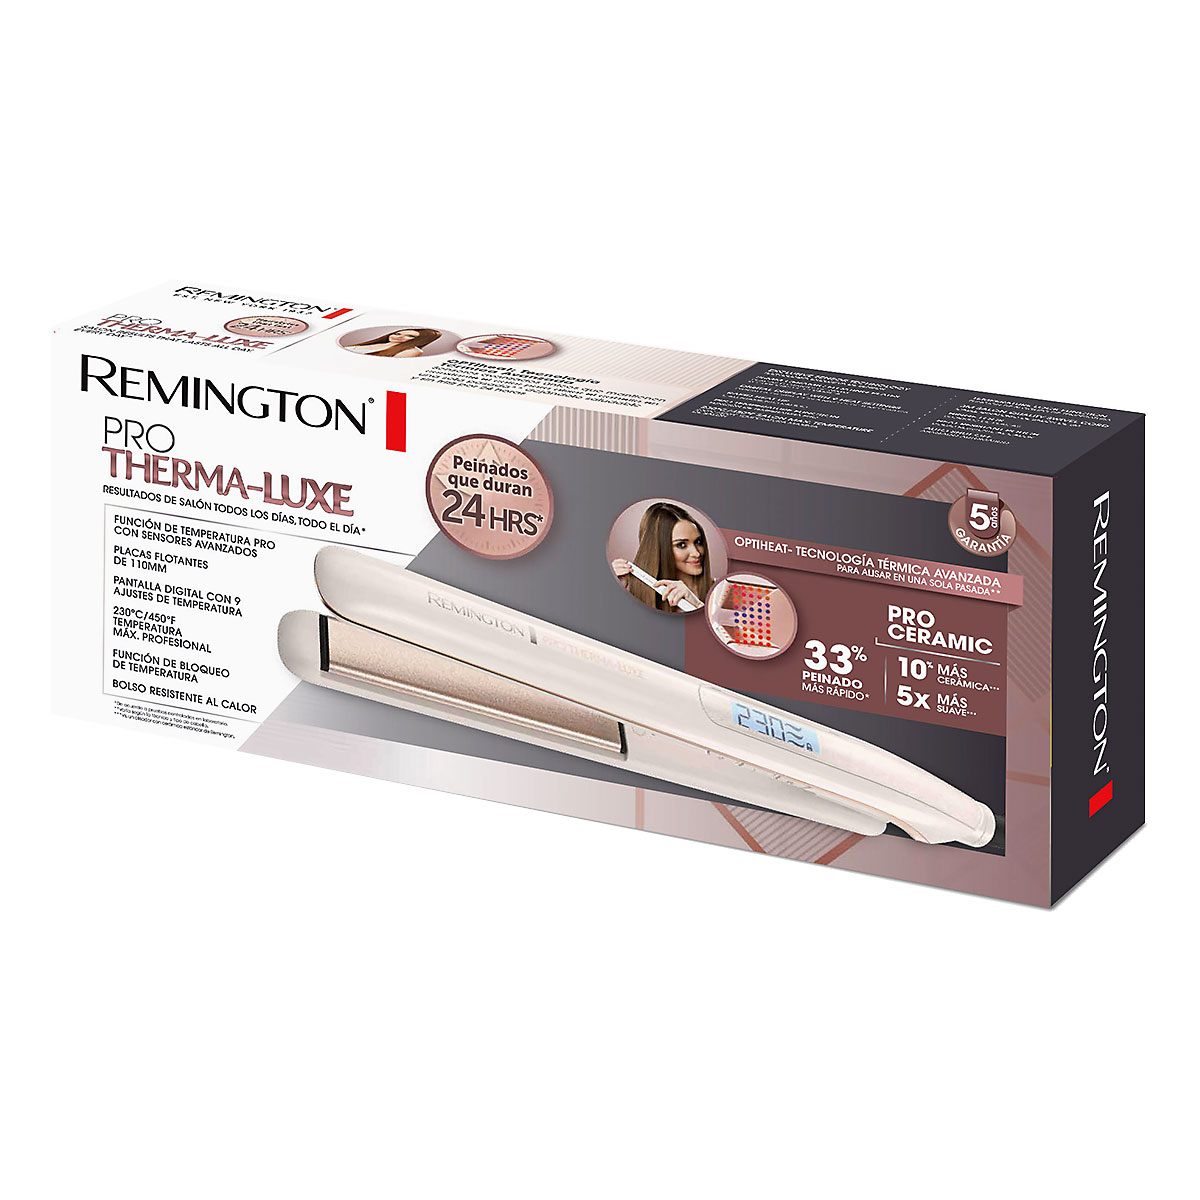 ▷ Plancha Remington Proluxe S9100 - PLANCHAS DE PELO